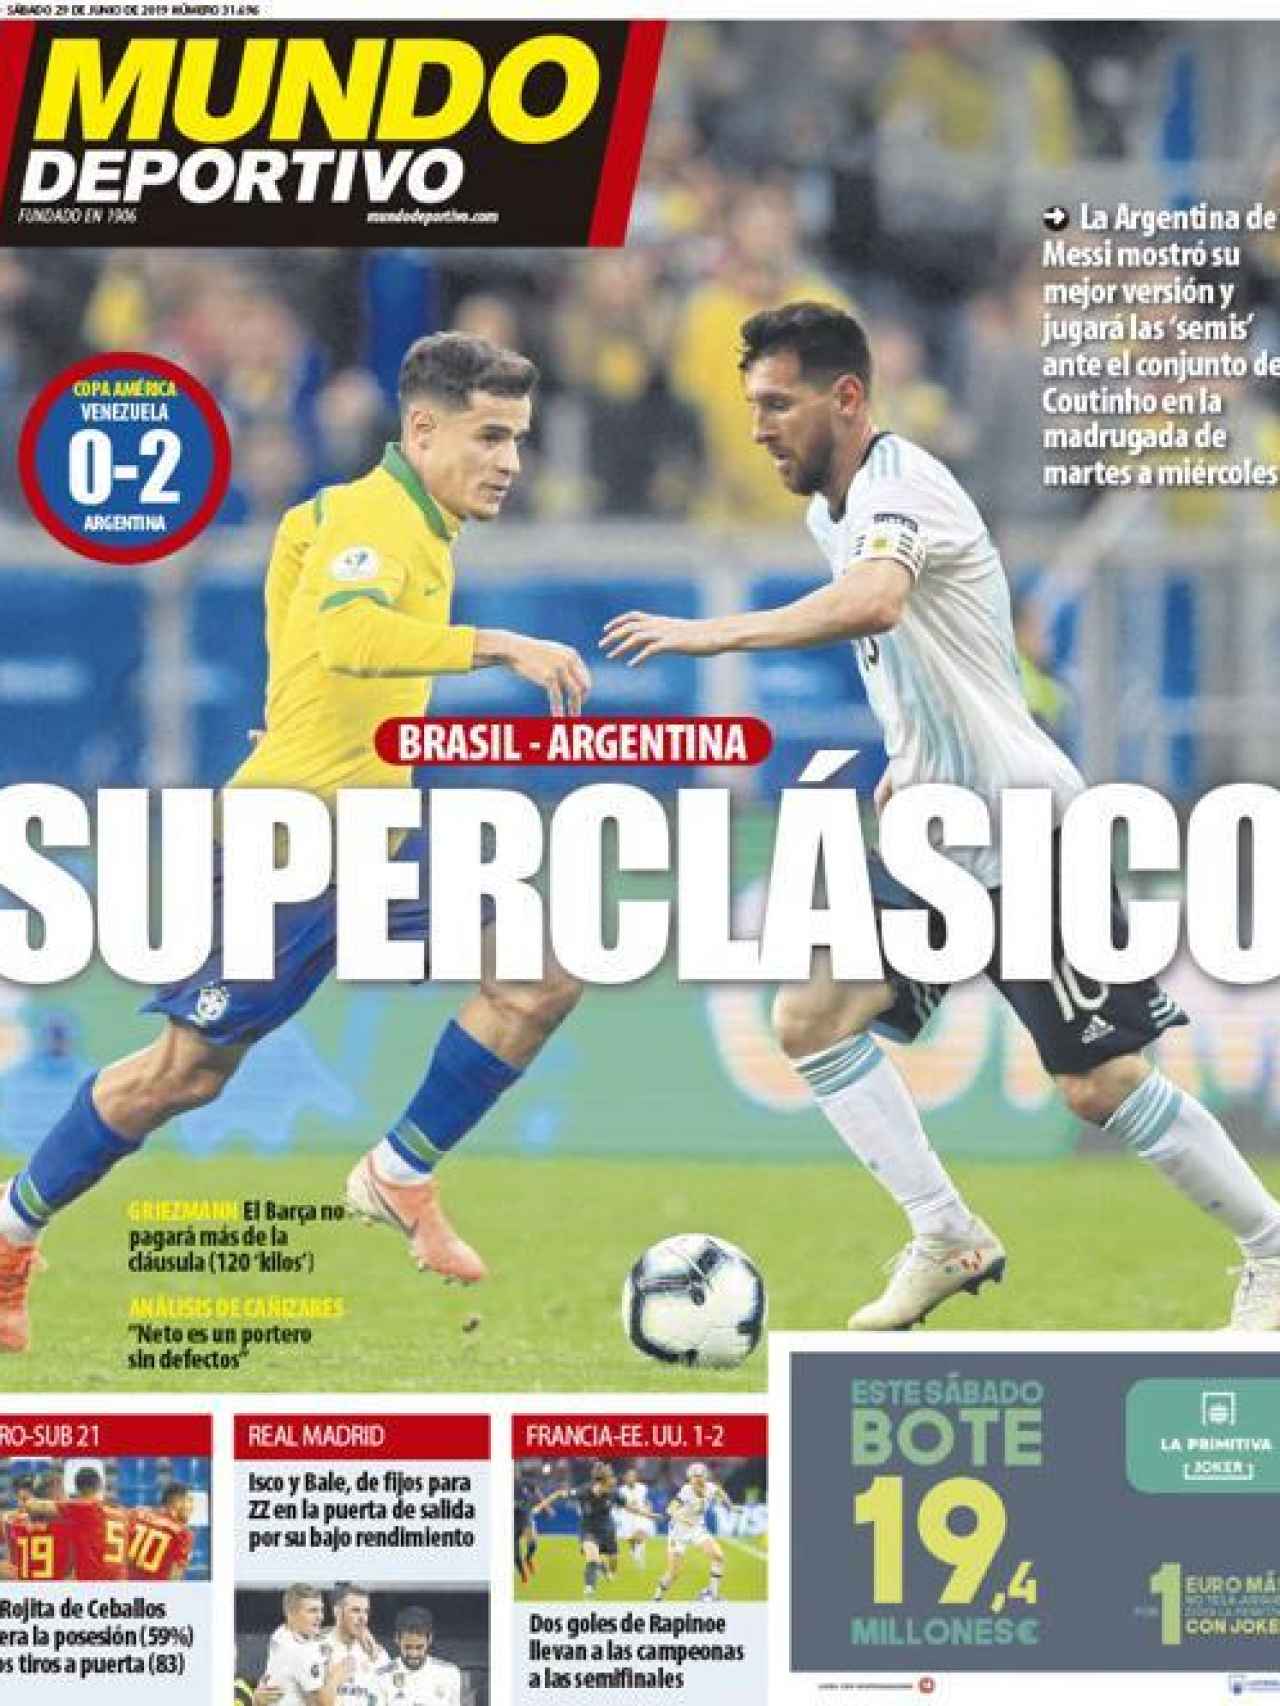 La portada del diario Mundo Deportivo (29/06/2019)